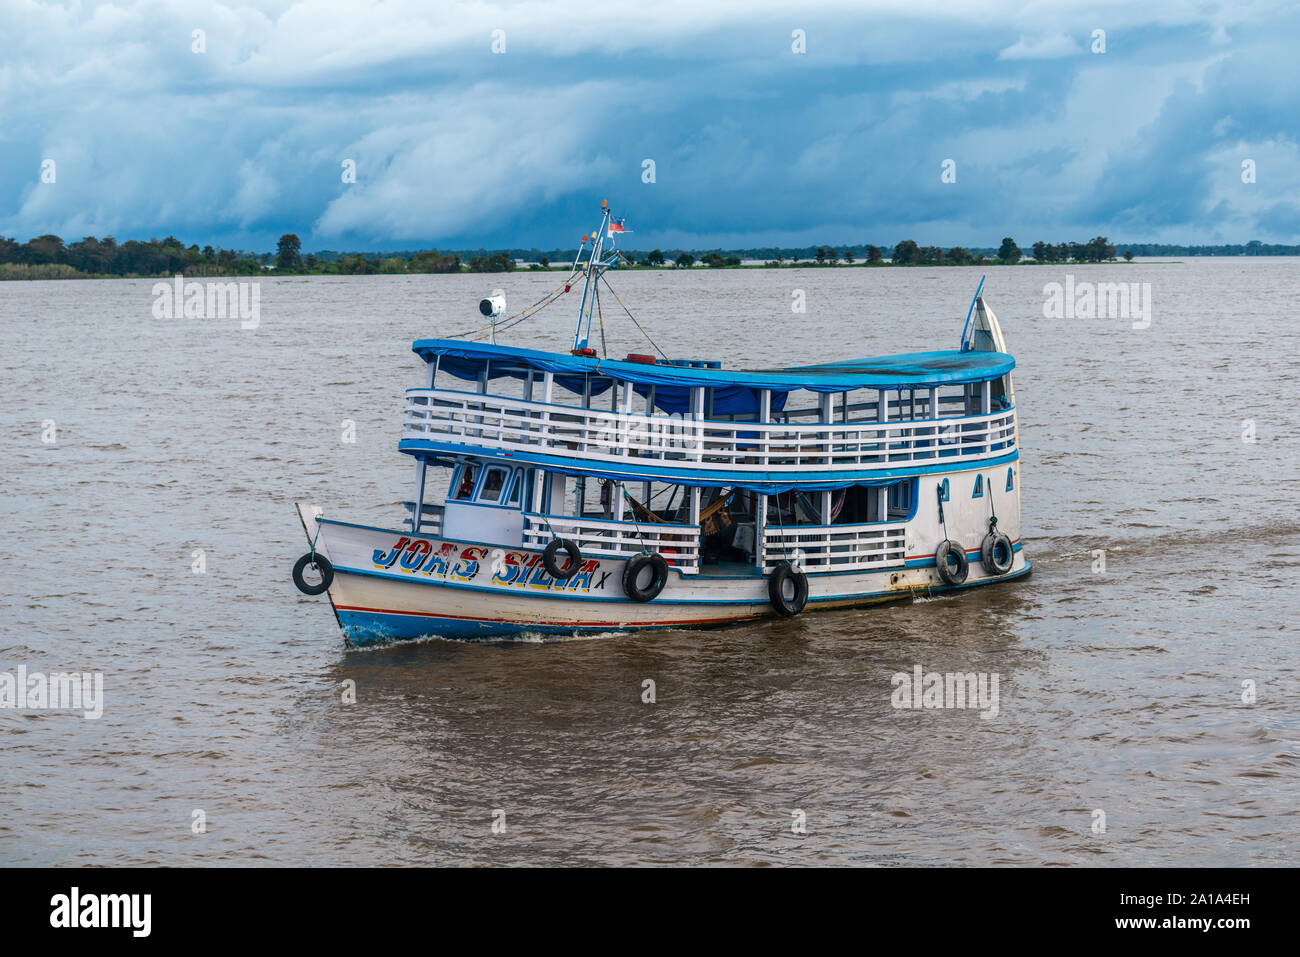 Obersations sur deux jours de voyage en bateau de Manaus à Tefé, Rio Solimoes, Amazonas, l'Amazonie, Brésil, Amérique Latine Banque D'Images